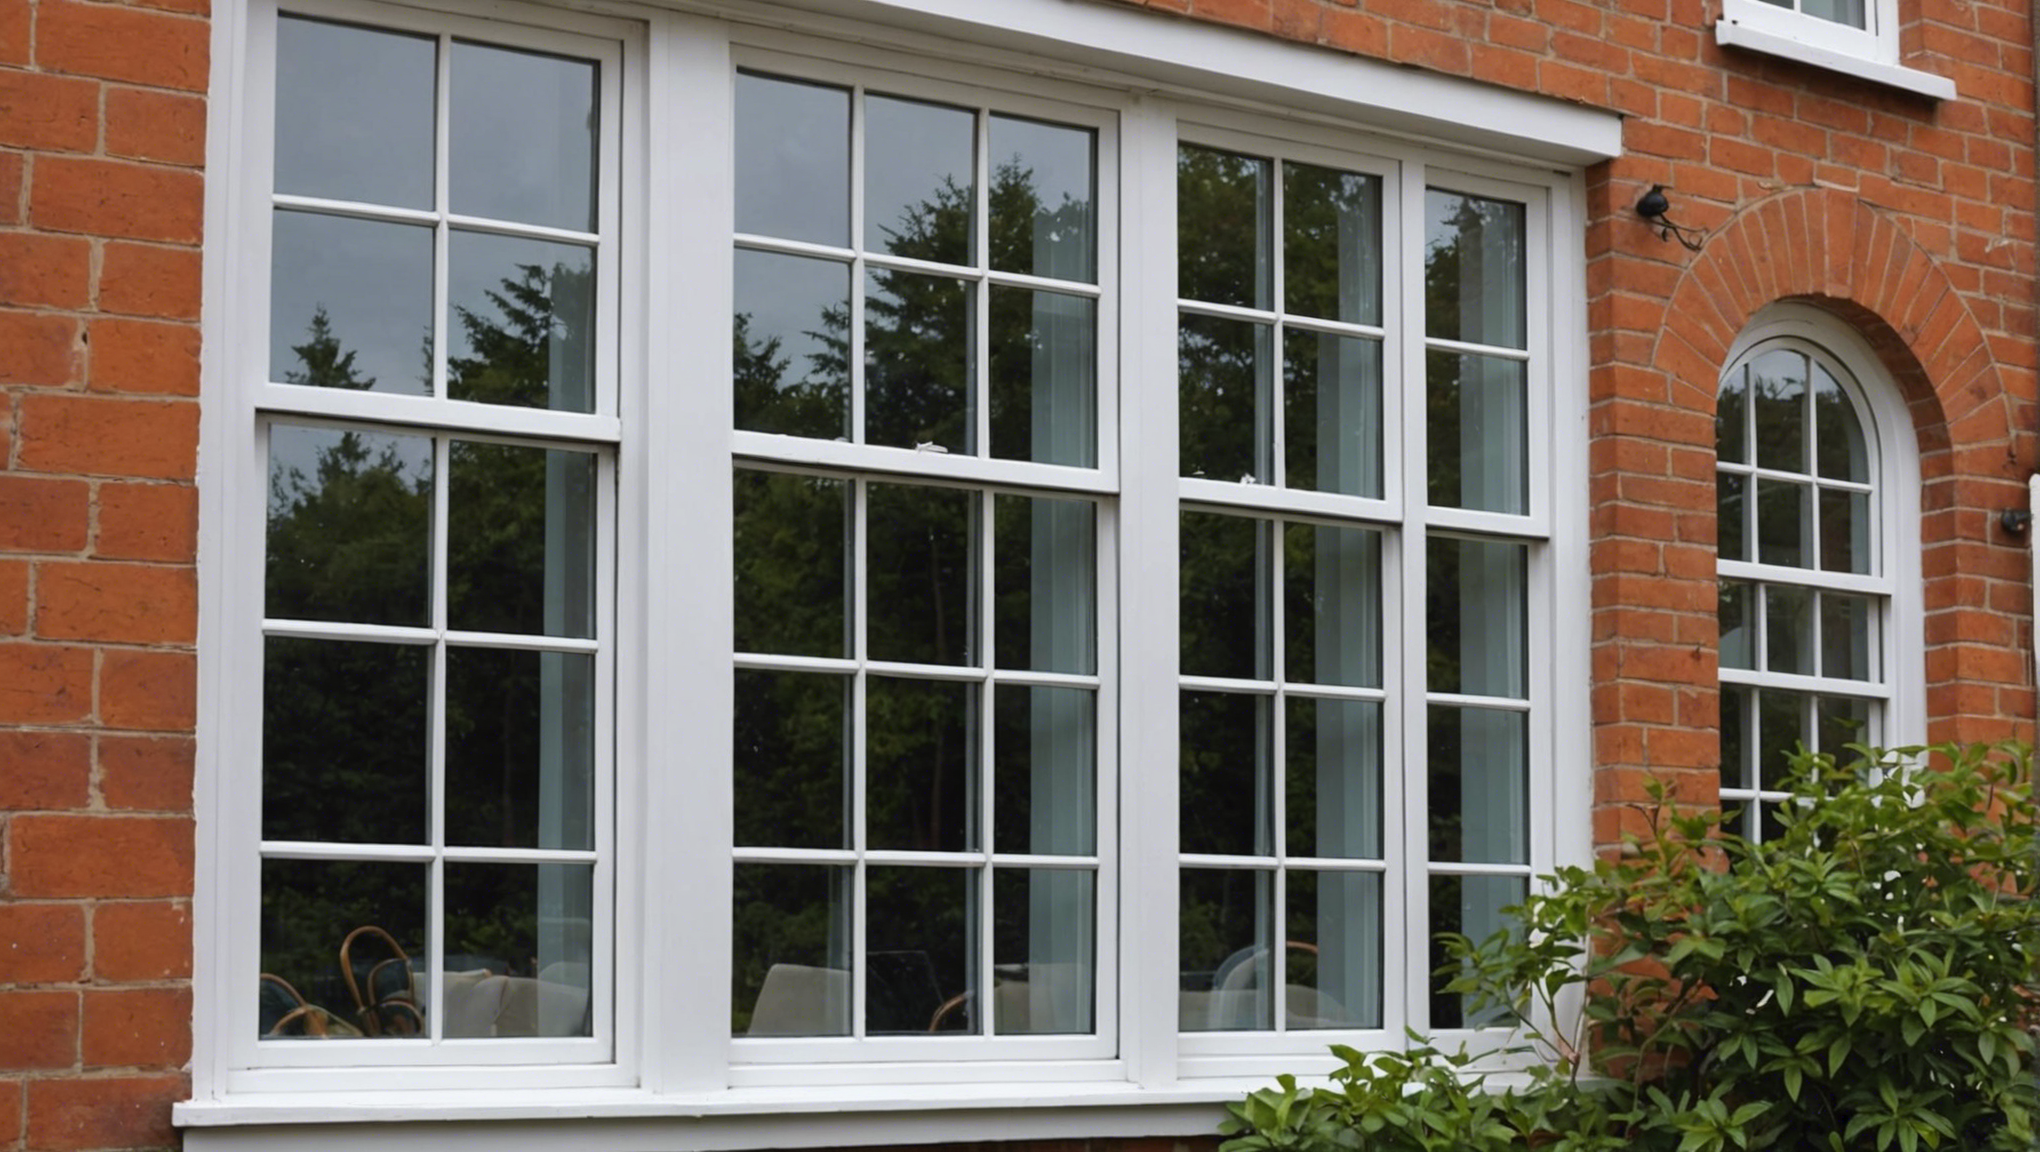 découvrez comment protéger efficacement vos fenêtres en double vitrage avec nos conseils pratiques et astuces pour une sécurité renforcée.